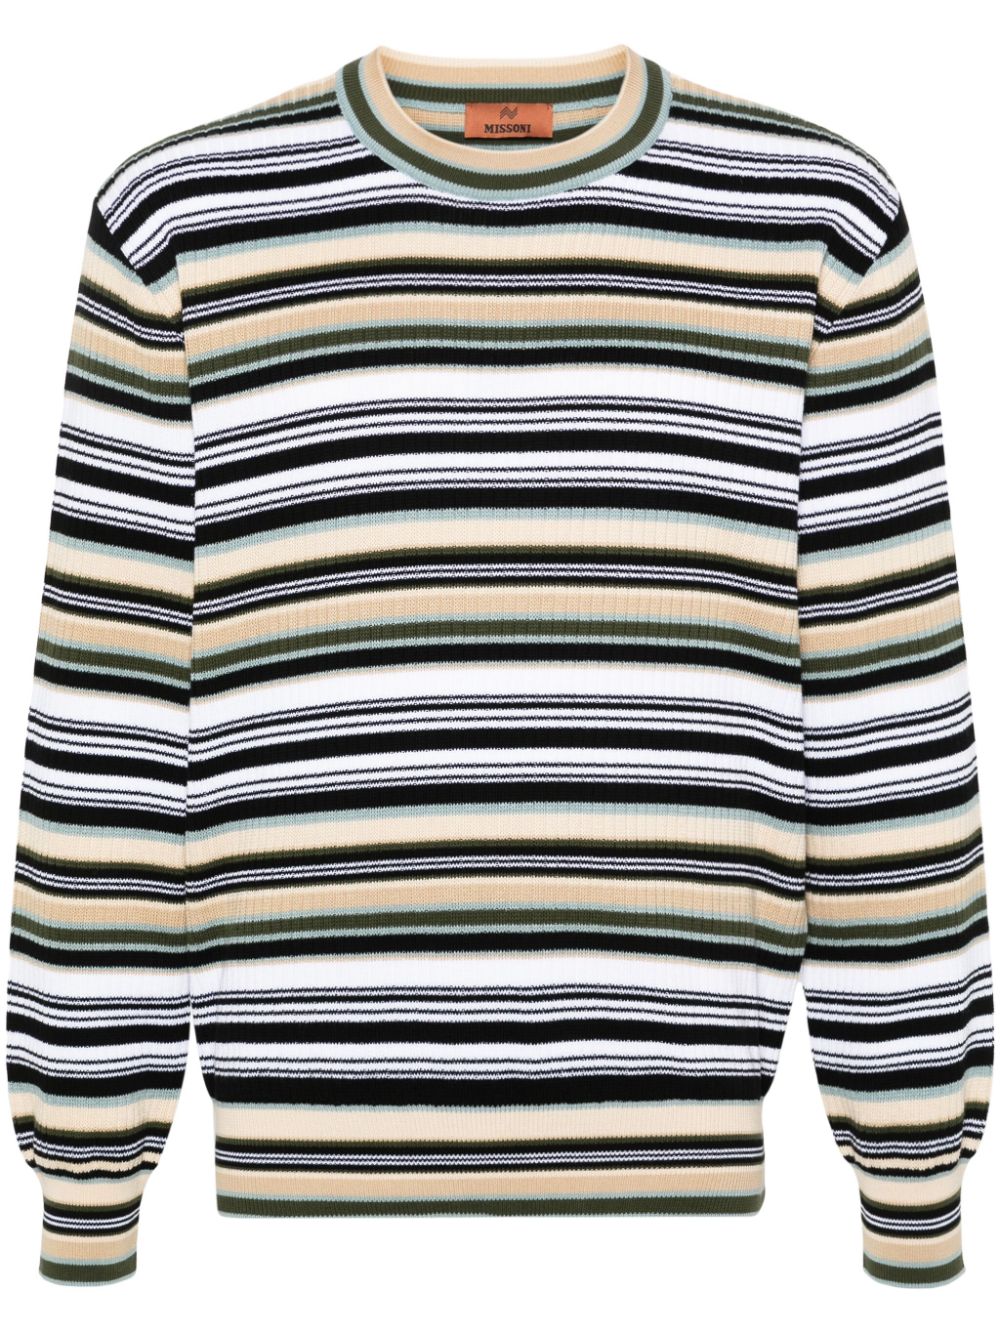 Missoni striped knitted jumper - Neutrals von Missoni